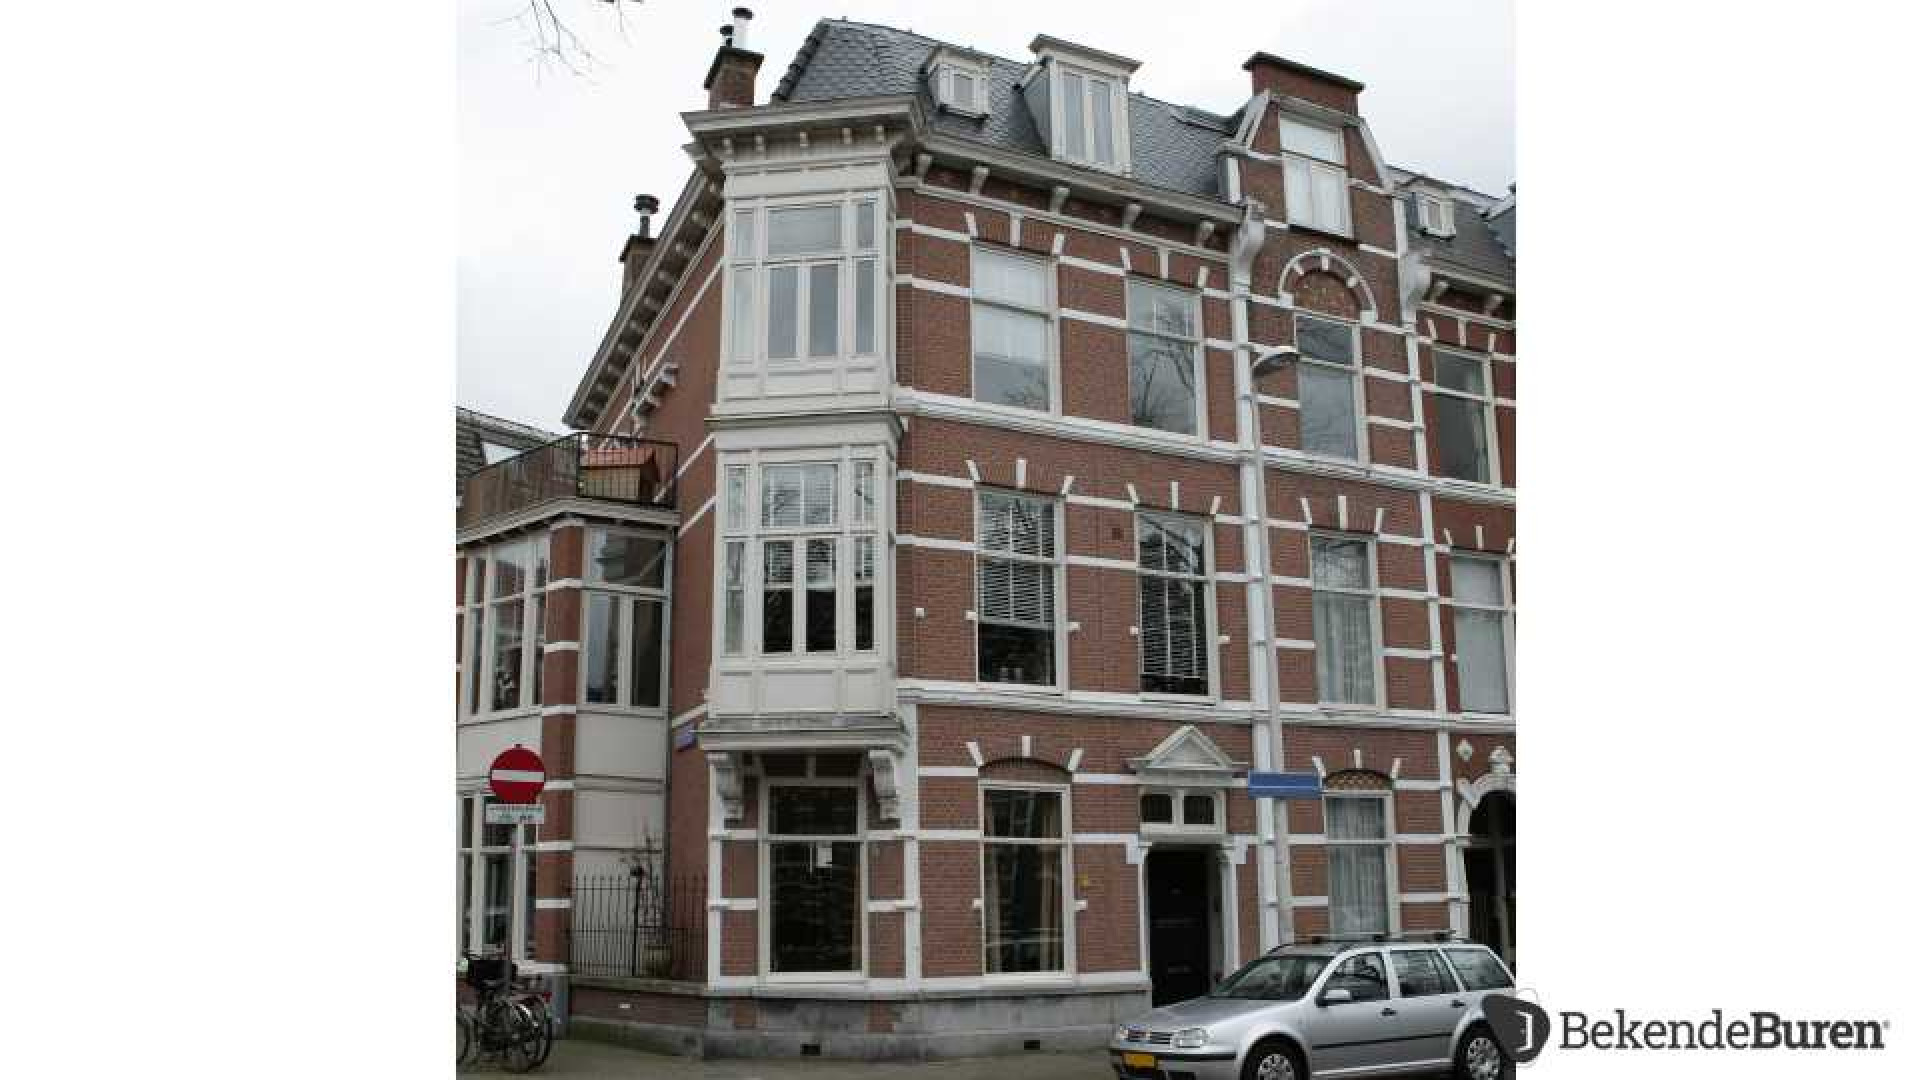 Dennis Storm verkoopt zijn Haagse dubbele bovenhuis. Zie foto's 2